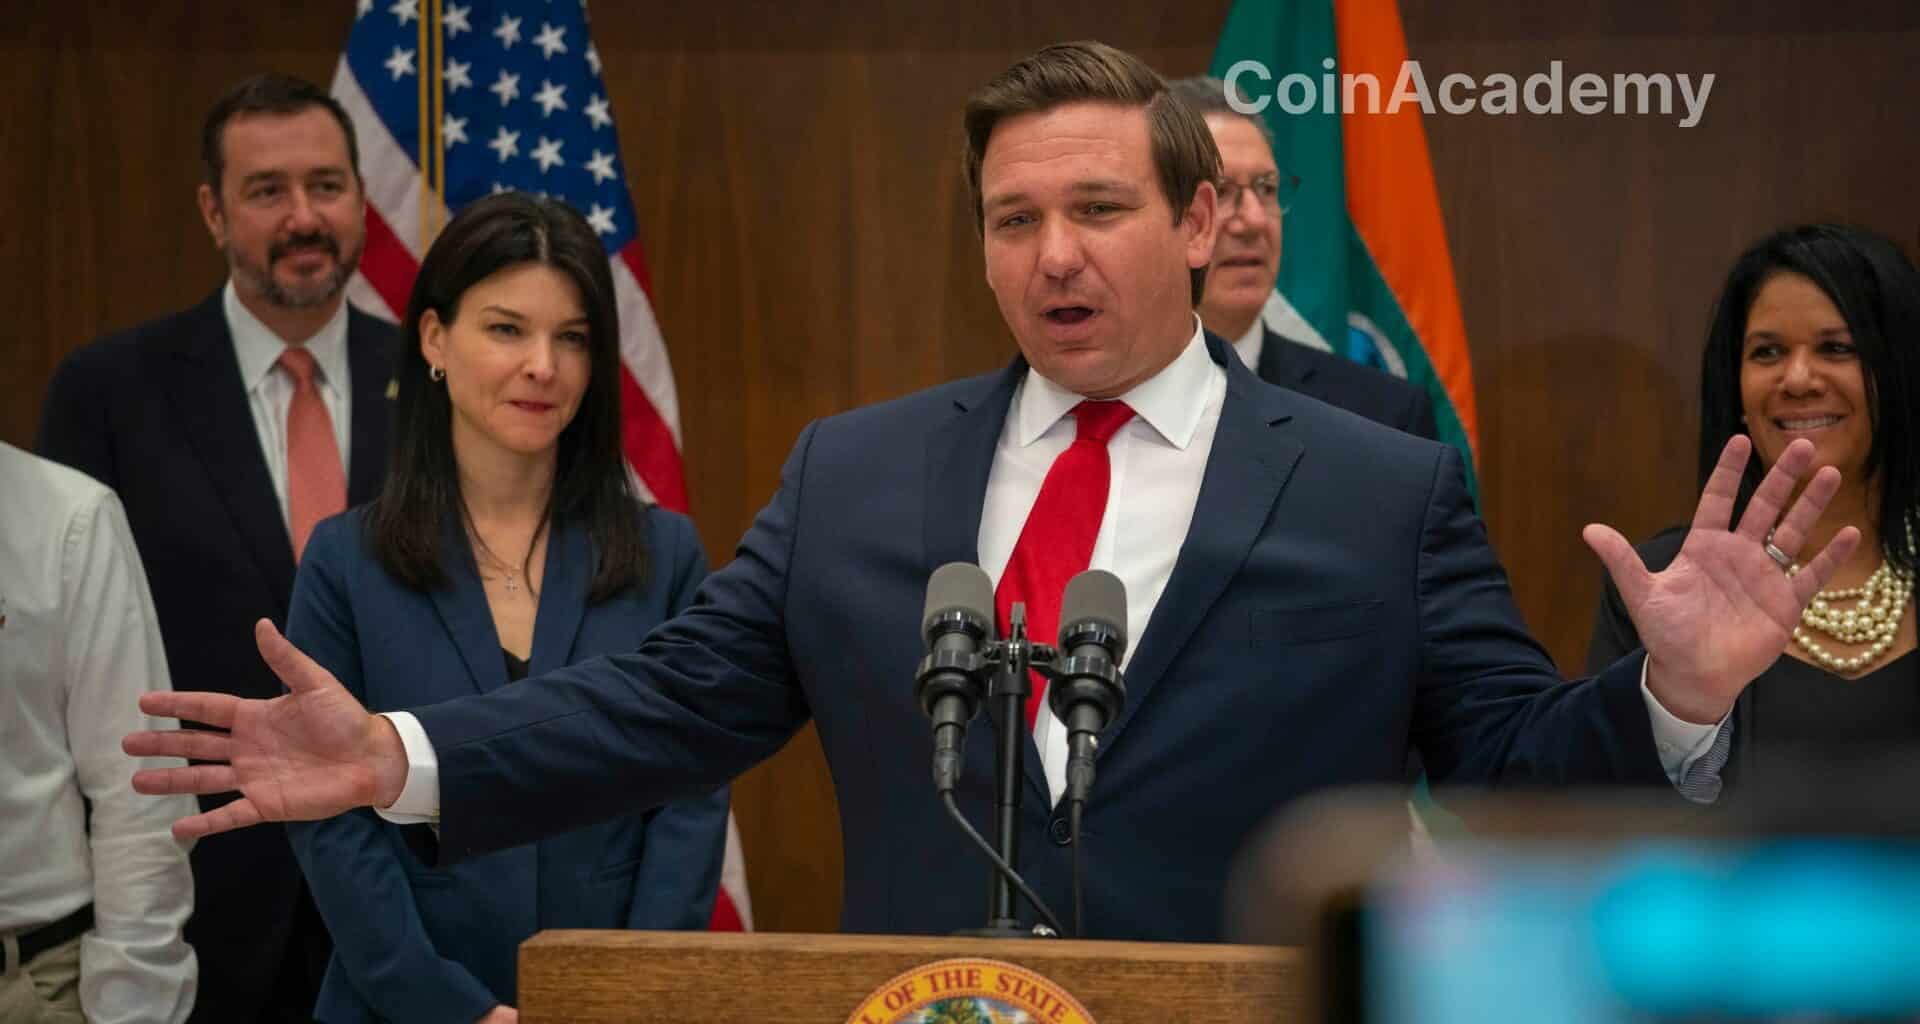 Le gouverneur de Floride, Ron DeSantis, annonce sa candidature à la présidence des États-Unis, promouvant son plan visant à protéger Bitcoin de la régulation fédérale.